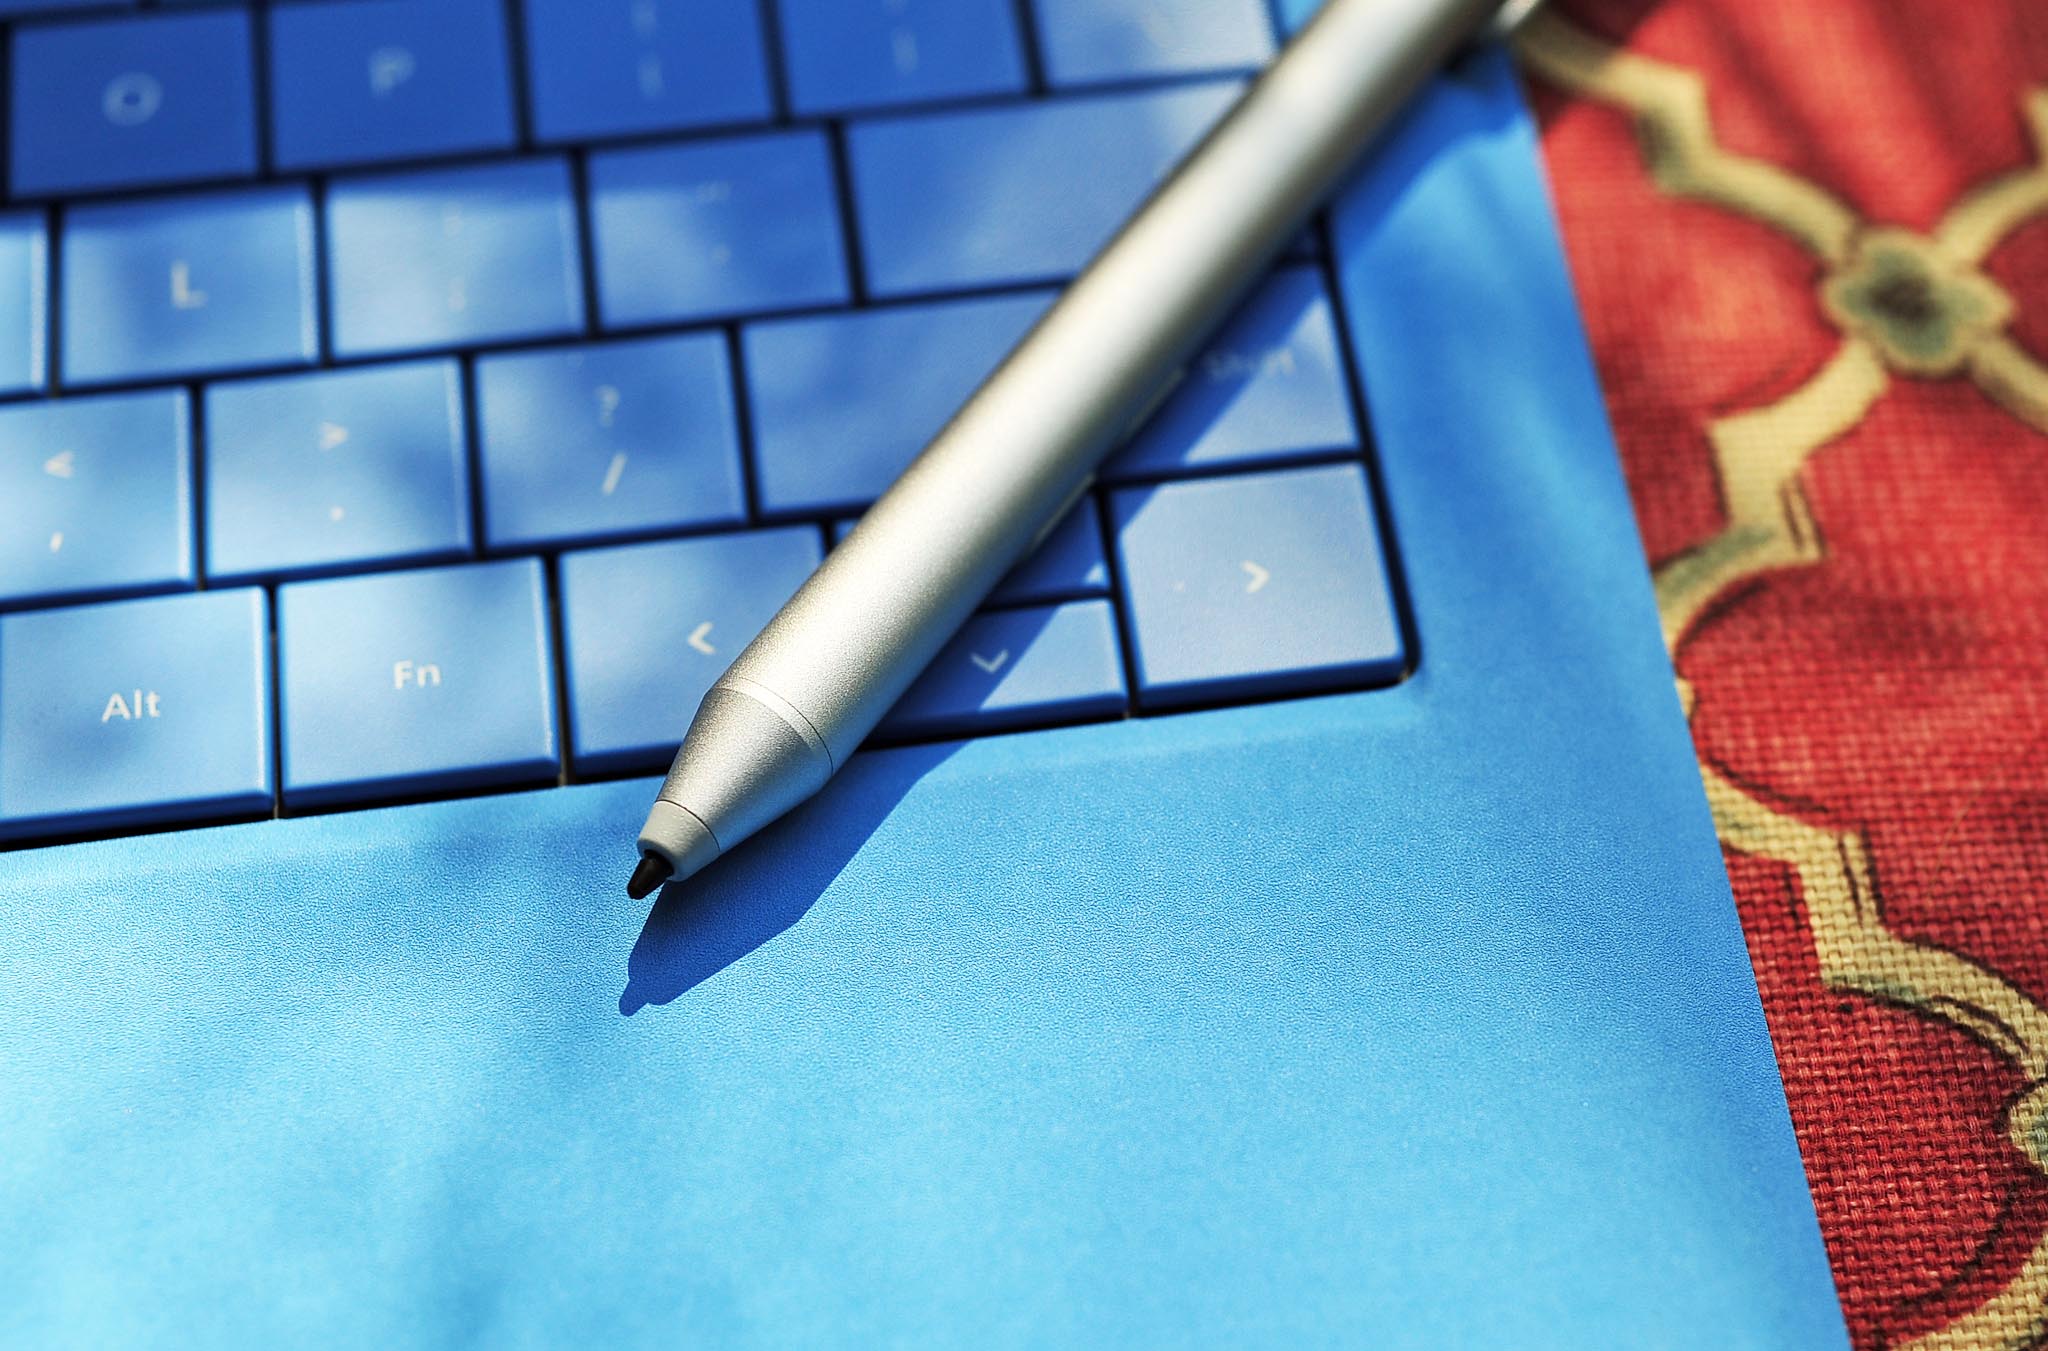 Surface Pro 3 pen